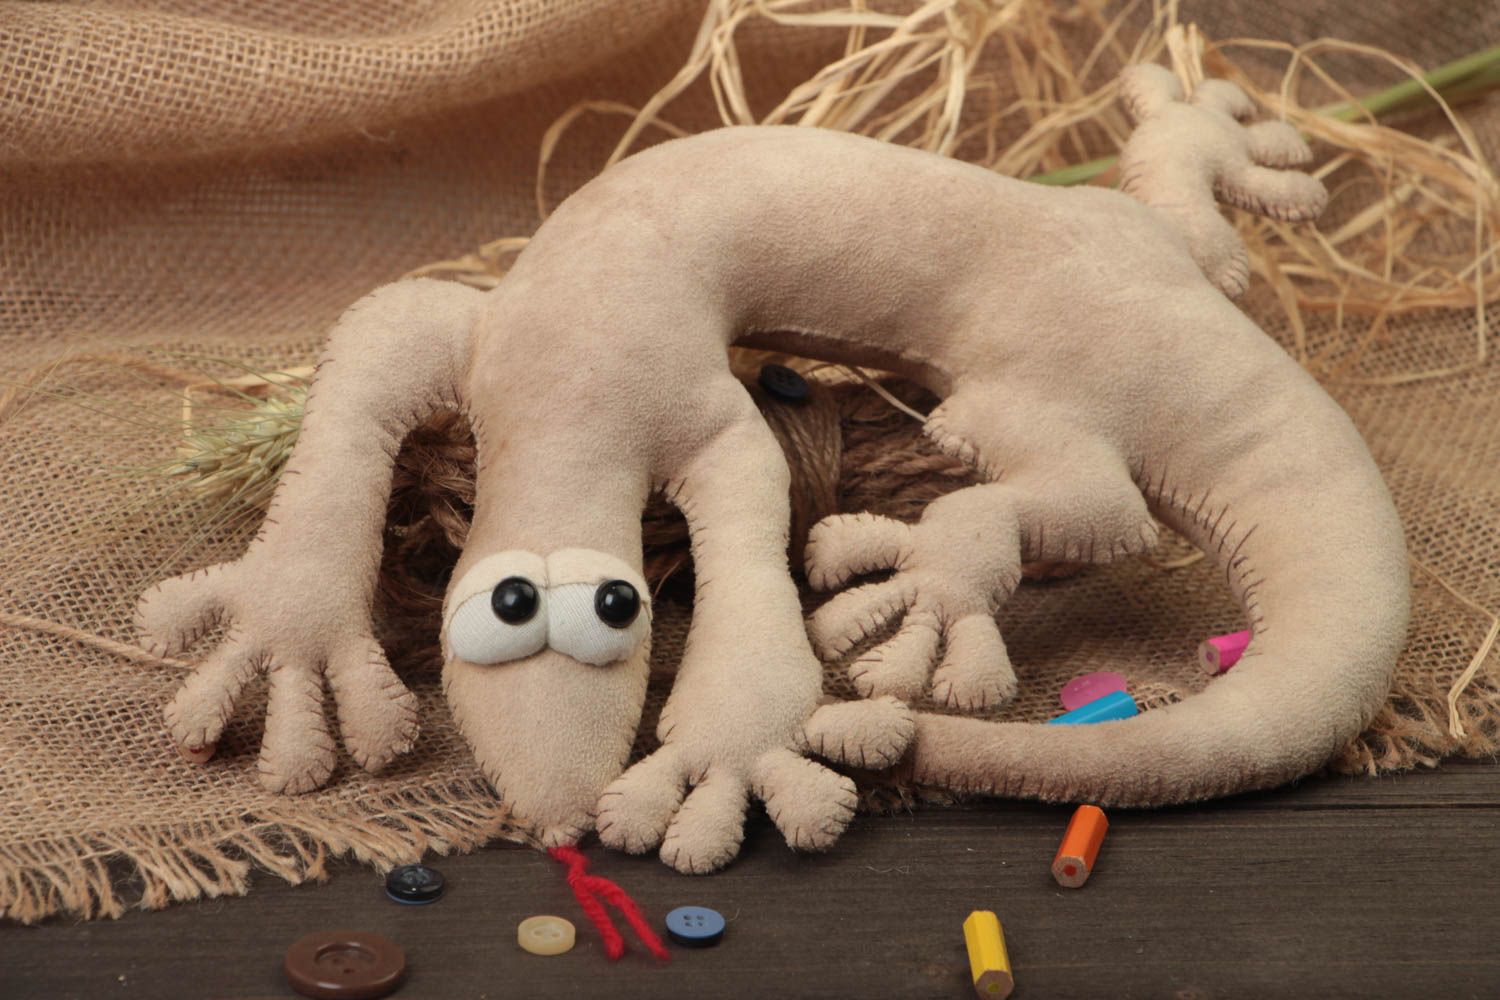 Мягкая игрушка ящерица ручной работы песочного цвета из ткани для детей фото 1